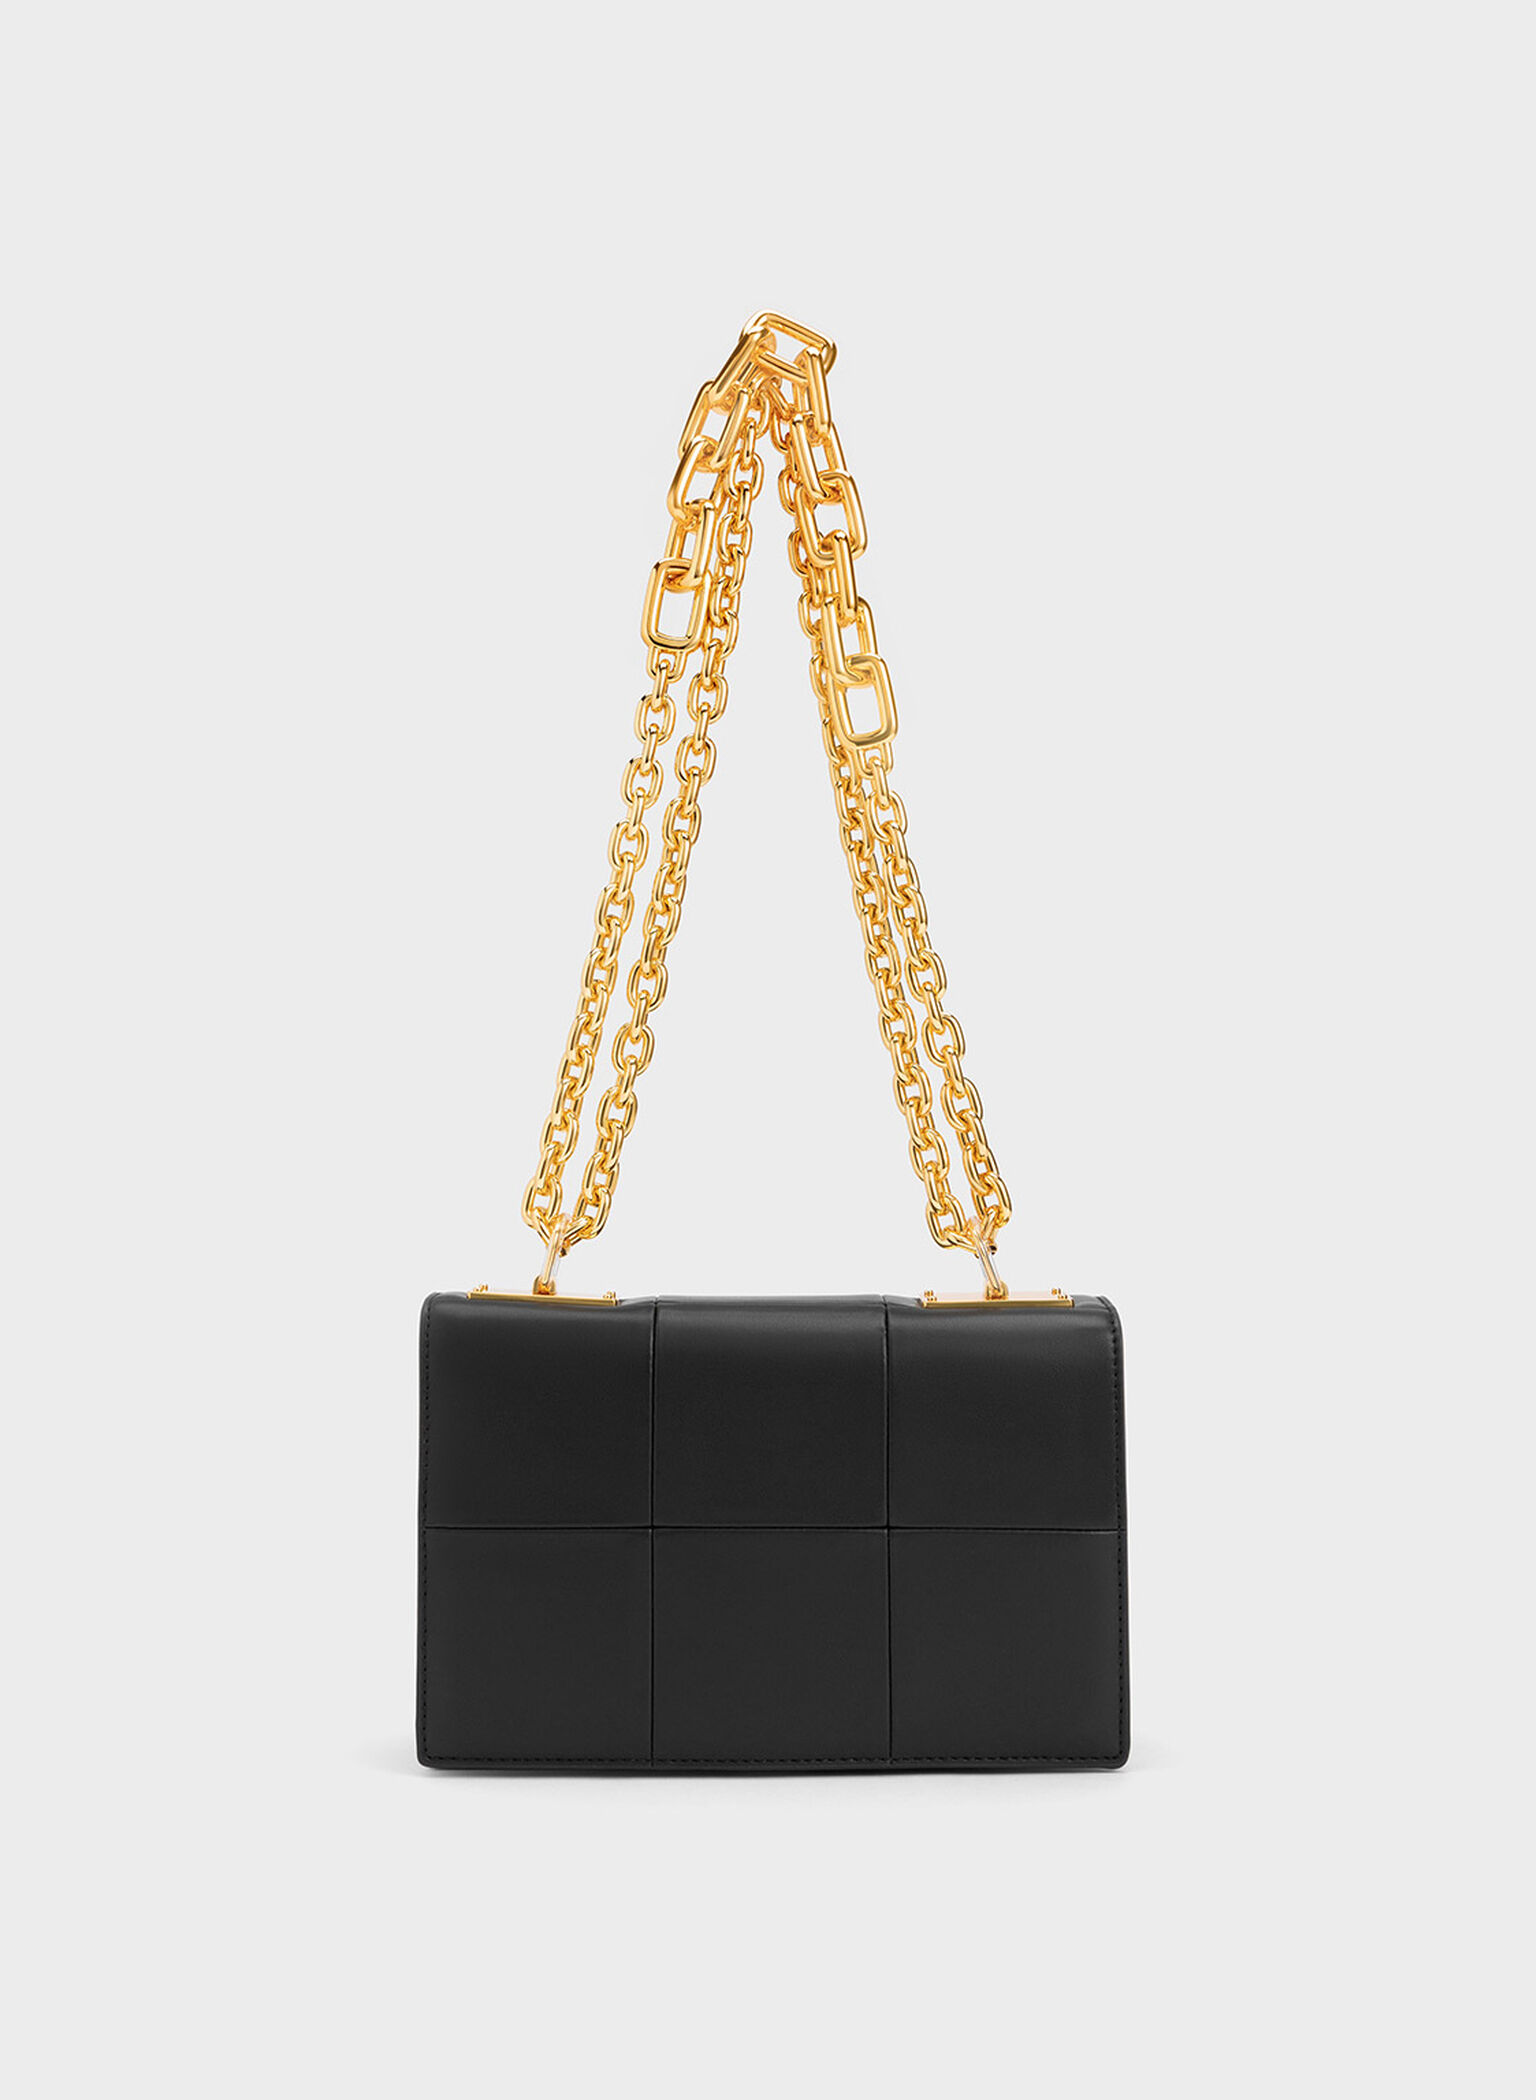 Black Georgette Chain Handle Bag - CHARLES & KEITH UK